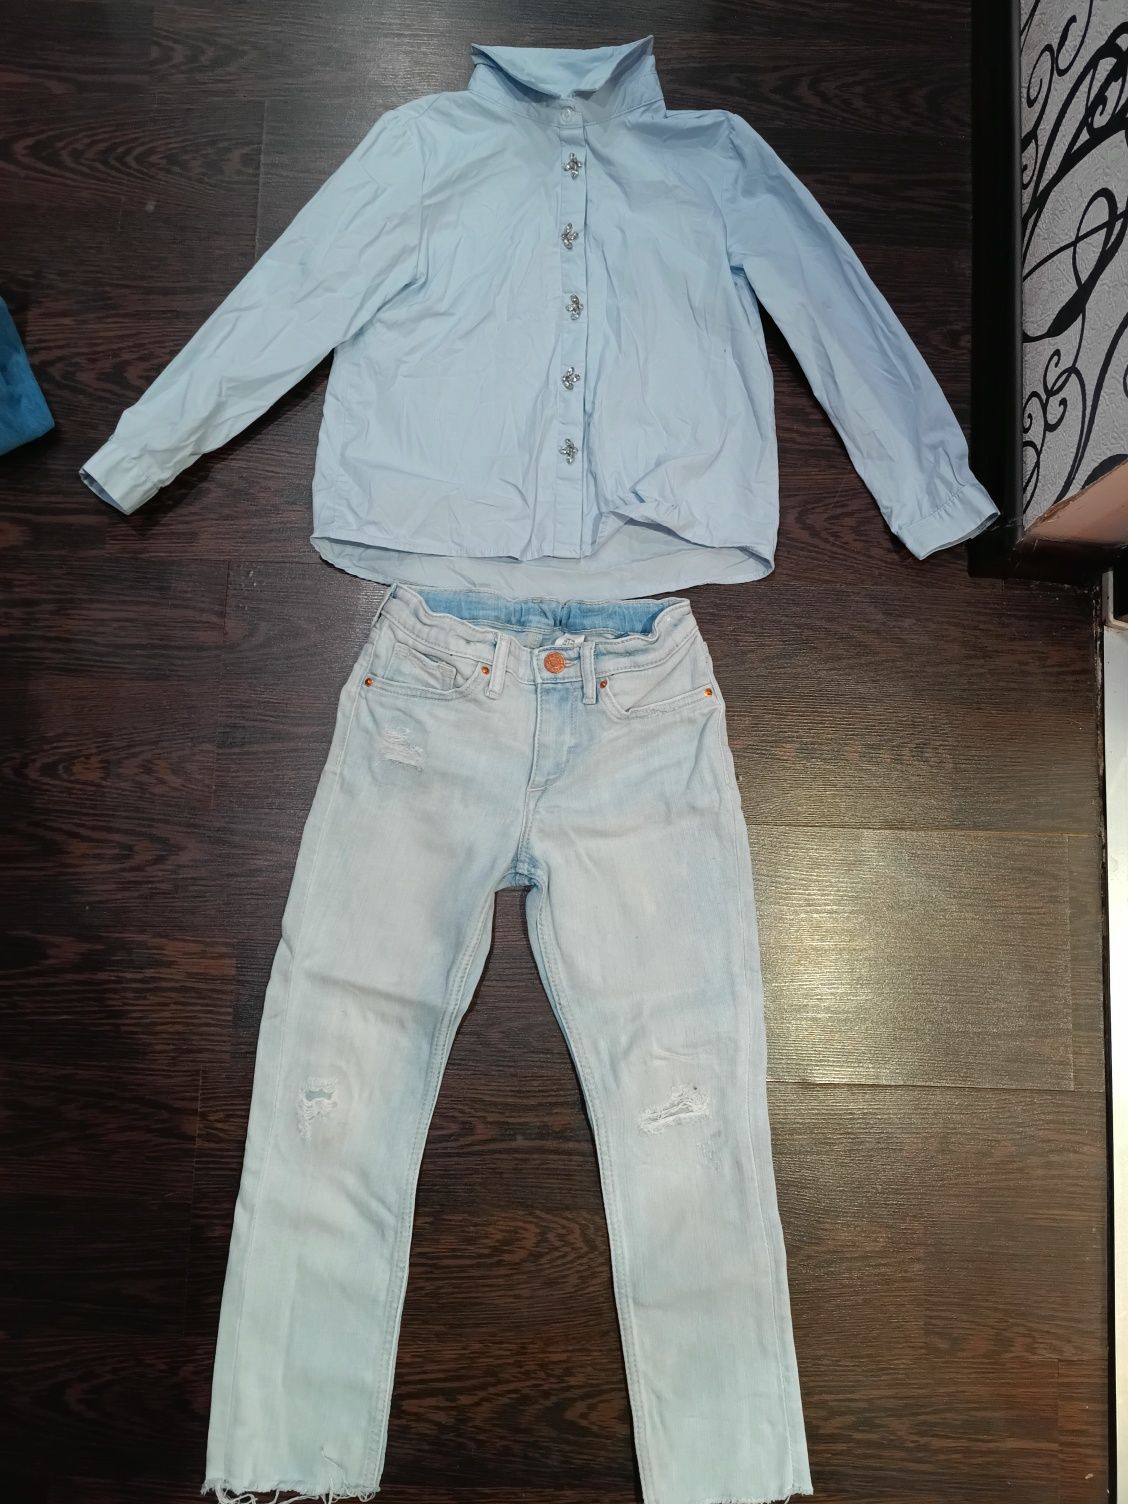 Джинсы и рубашка на 6-7 лет